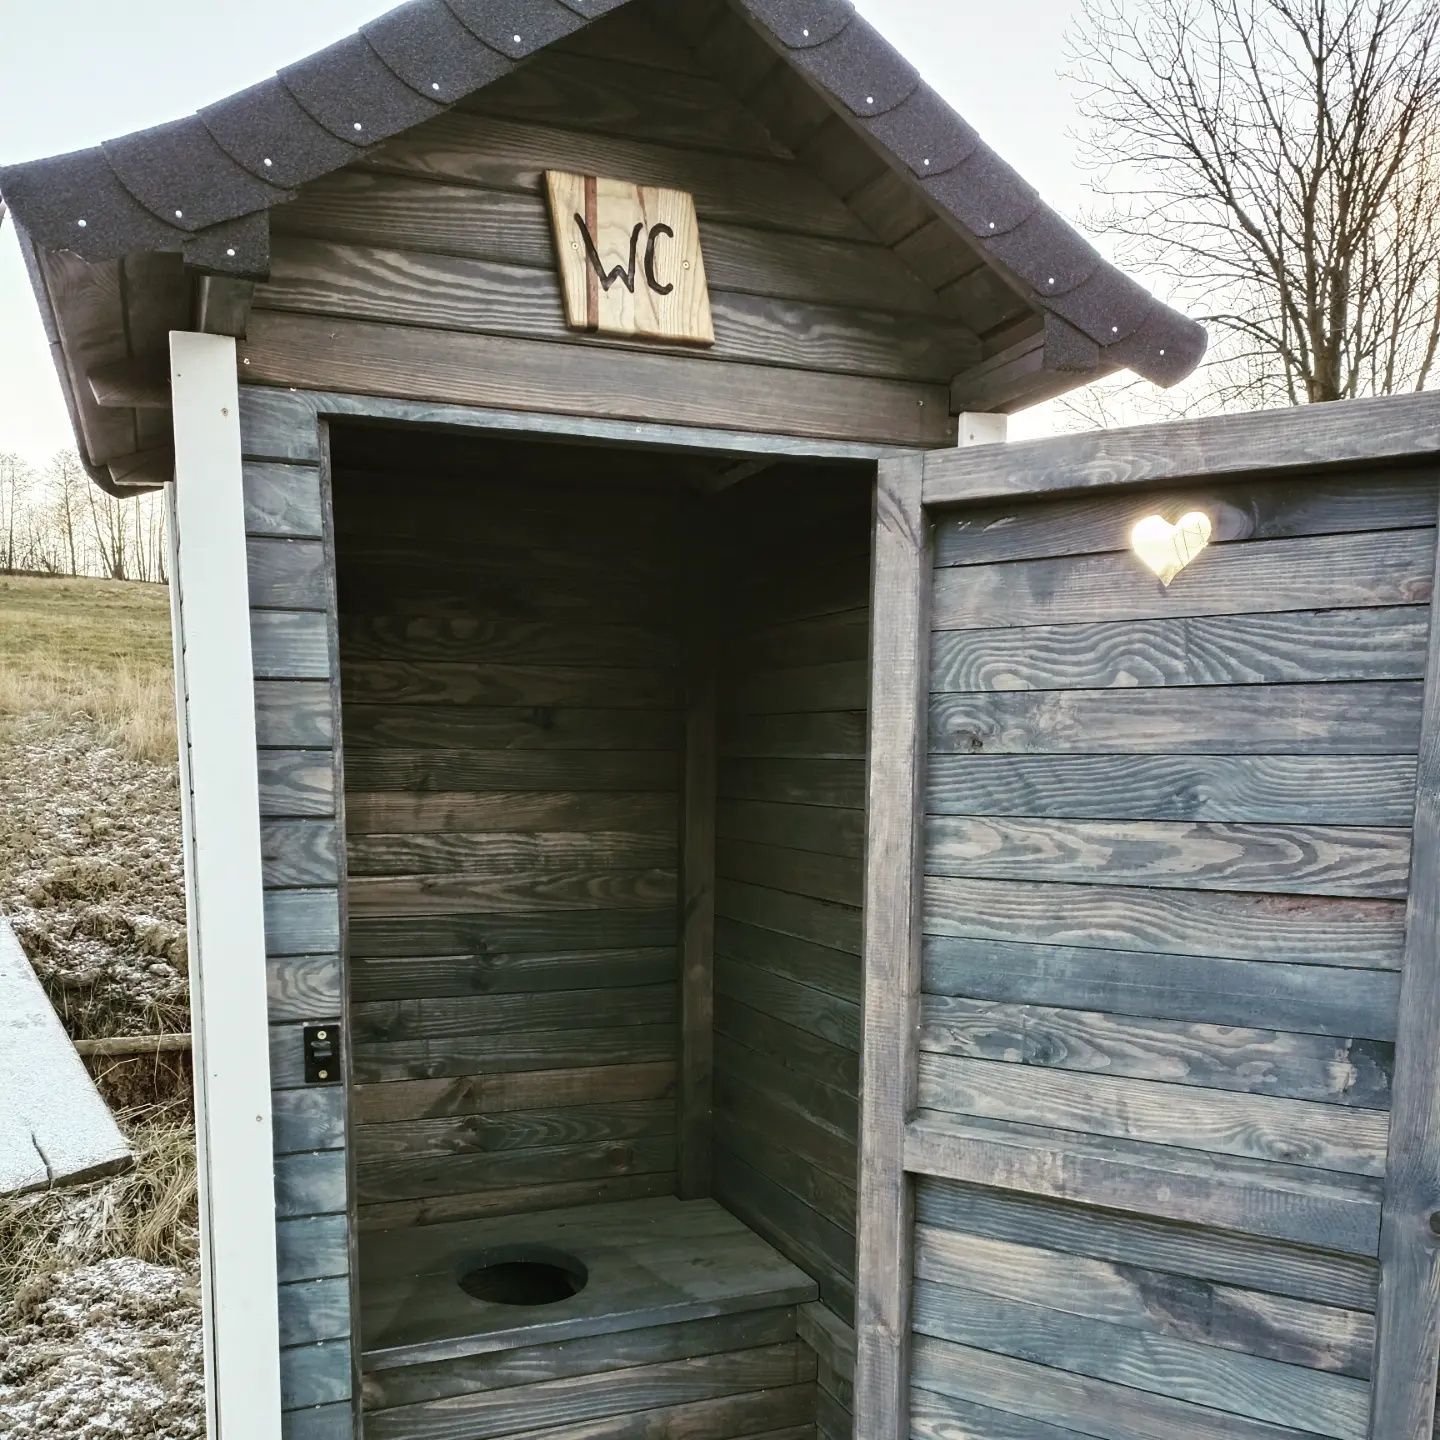 Wc Wychodek, toaleta